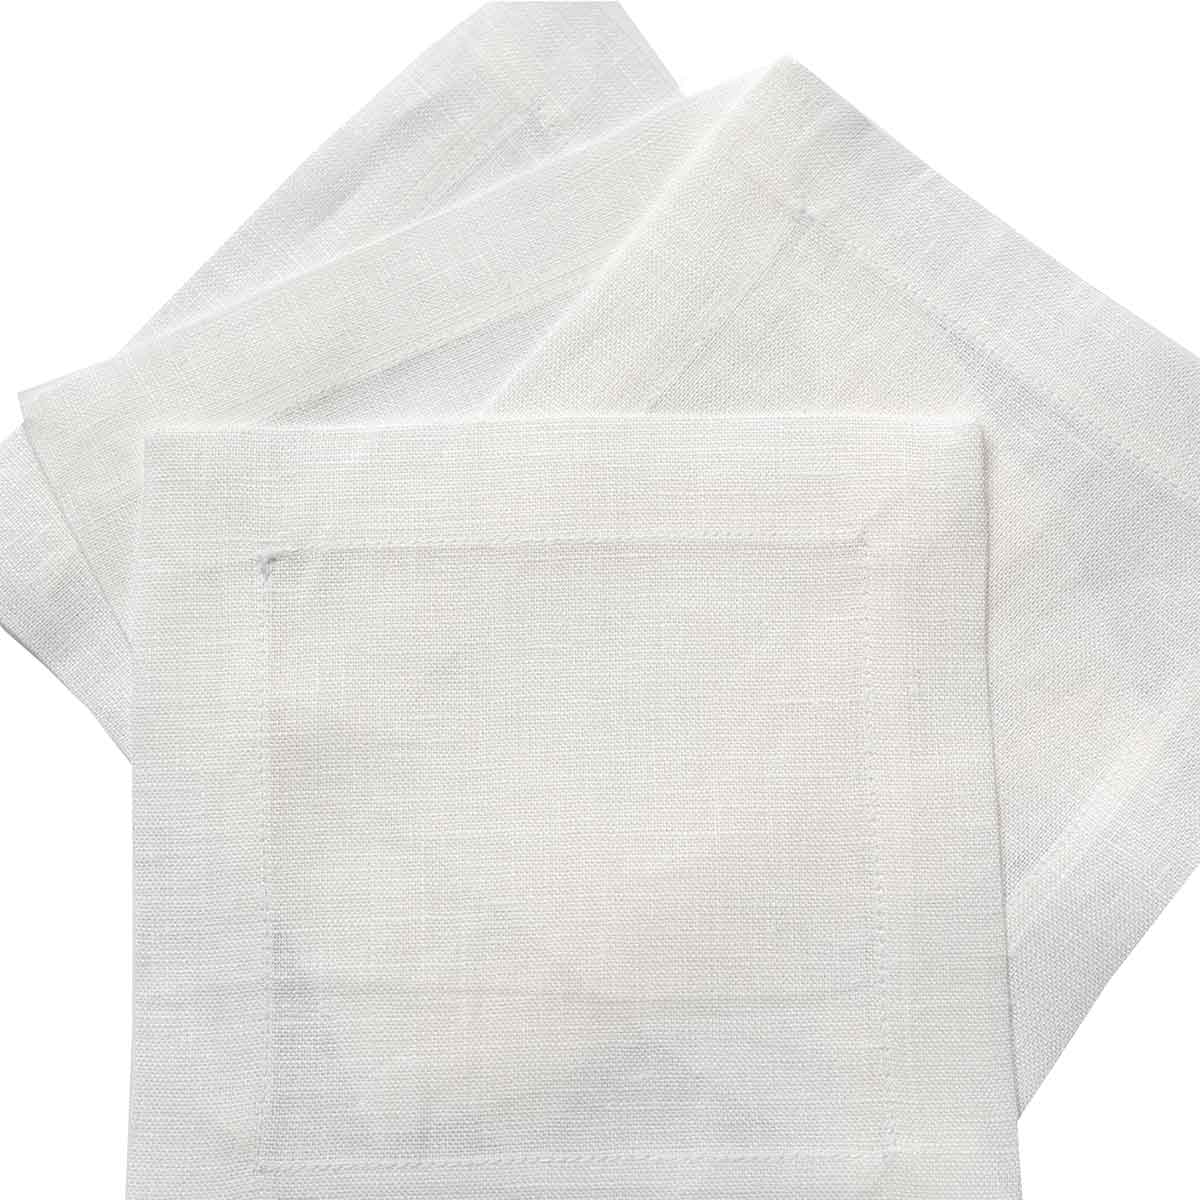 En Plain Air Cocktail Napkin | Garden Folly Fine Linens - wholesale linen napkins for weddings, white linen napkins wholesale, cotton linen napkins wholesale, bulk cloth napkins wedding